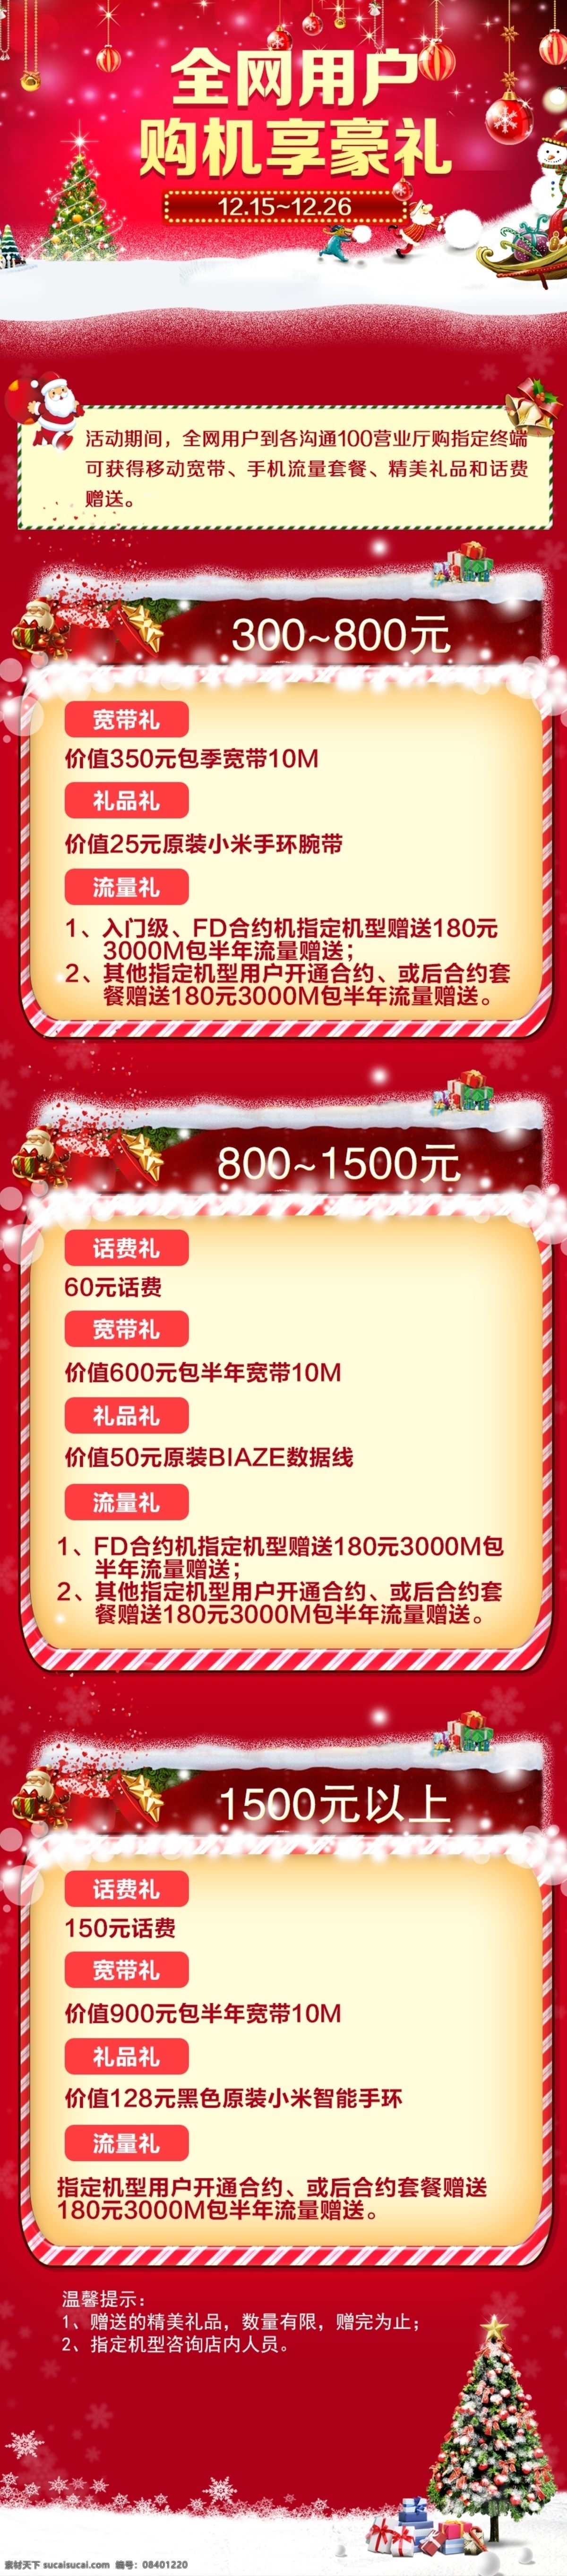 全网 用户 购机 享 好 礼 宣传 中国移动 全网用户 购机享好礼 礼物 圣诞节 红色